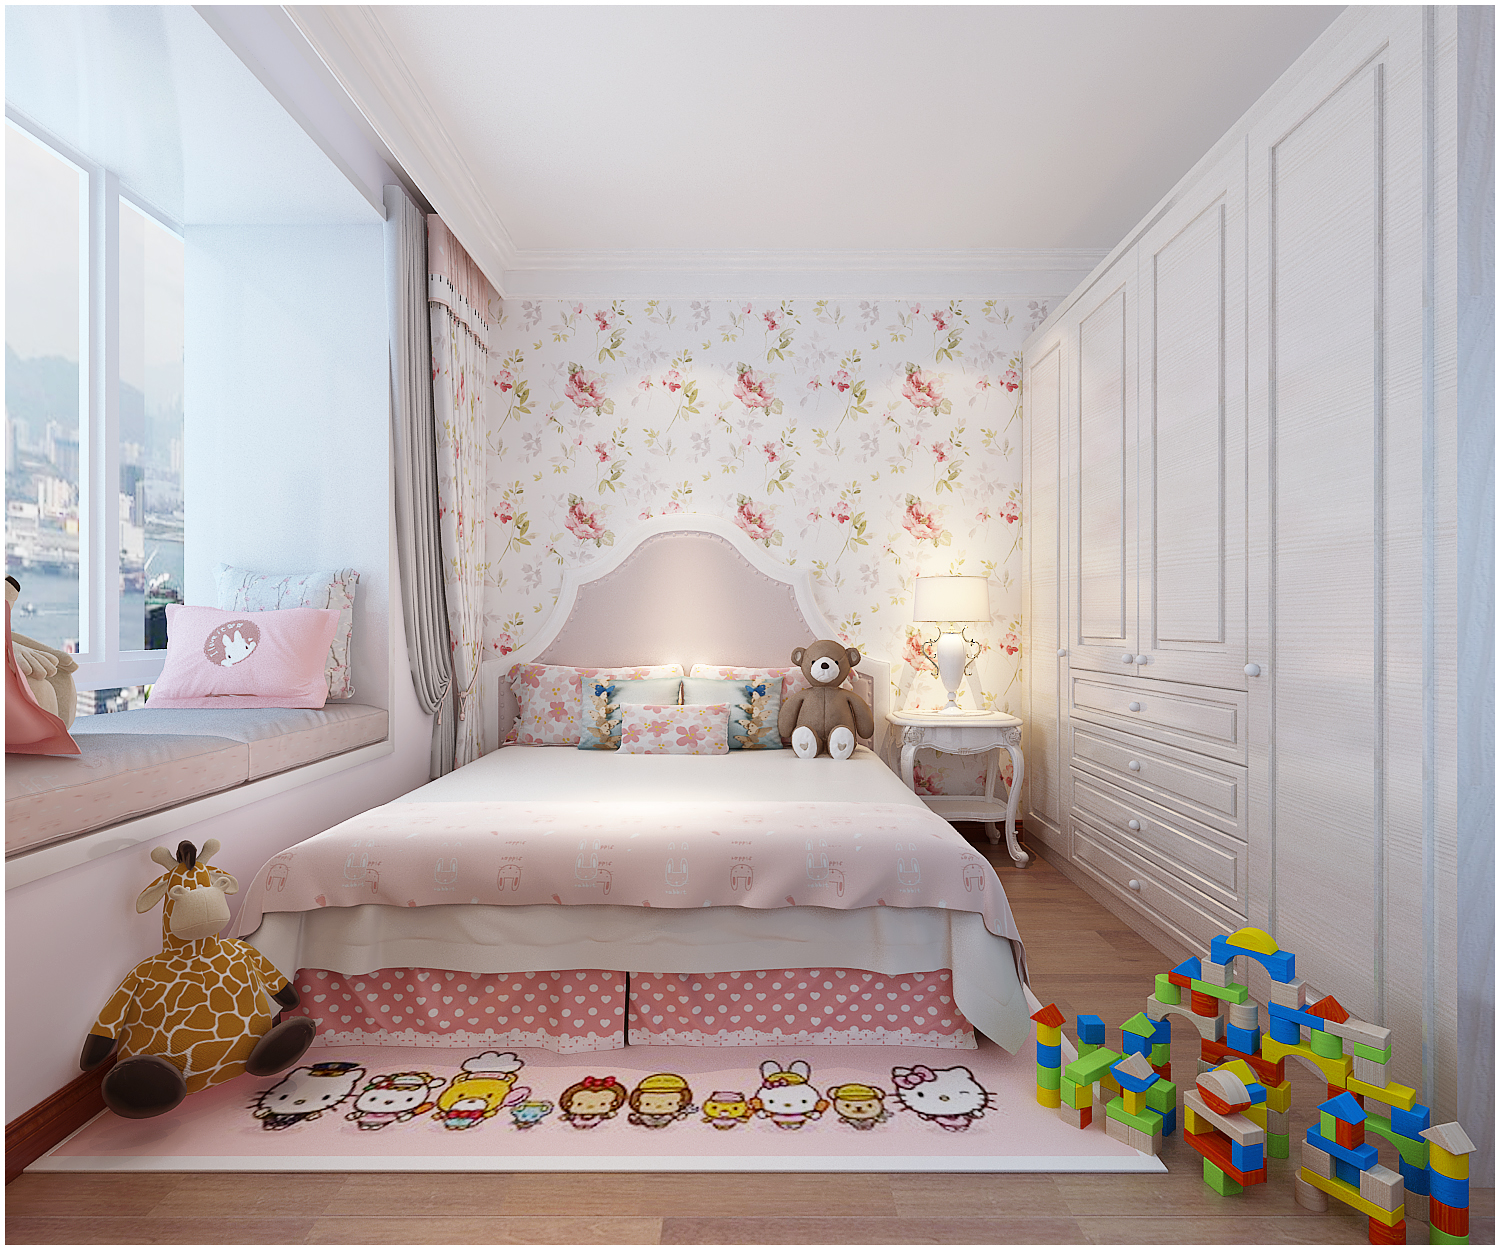 三居 美式 收纳 小资 儿童房图片来自快乐彩在尚乐城美式装修风格设计的分享